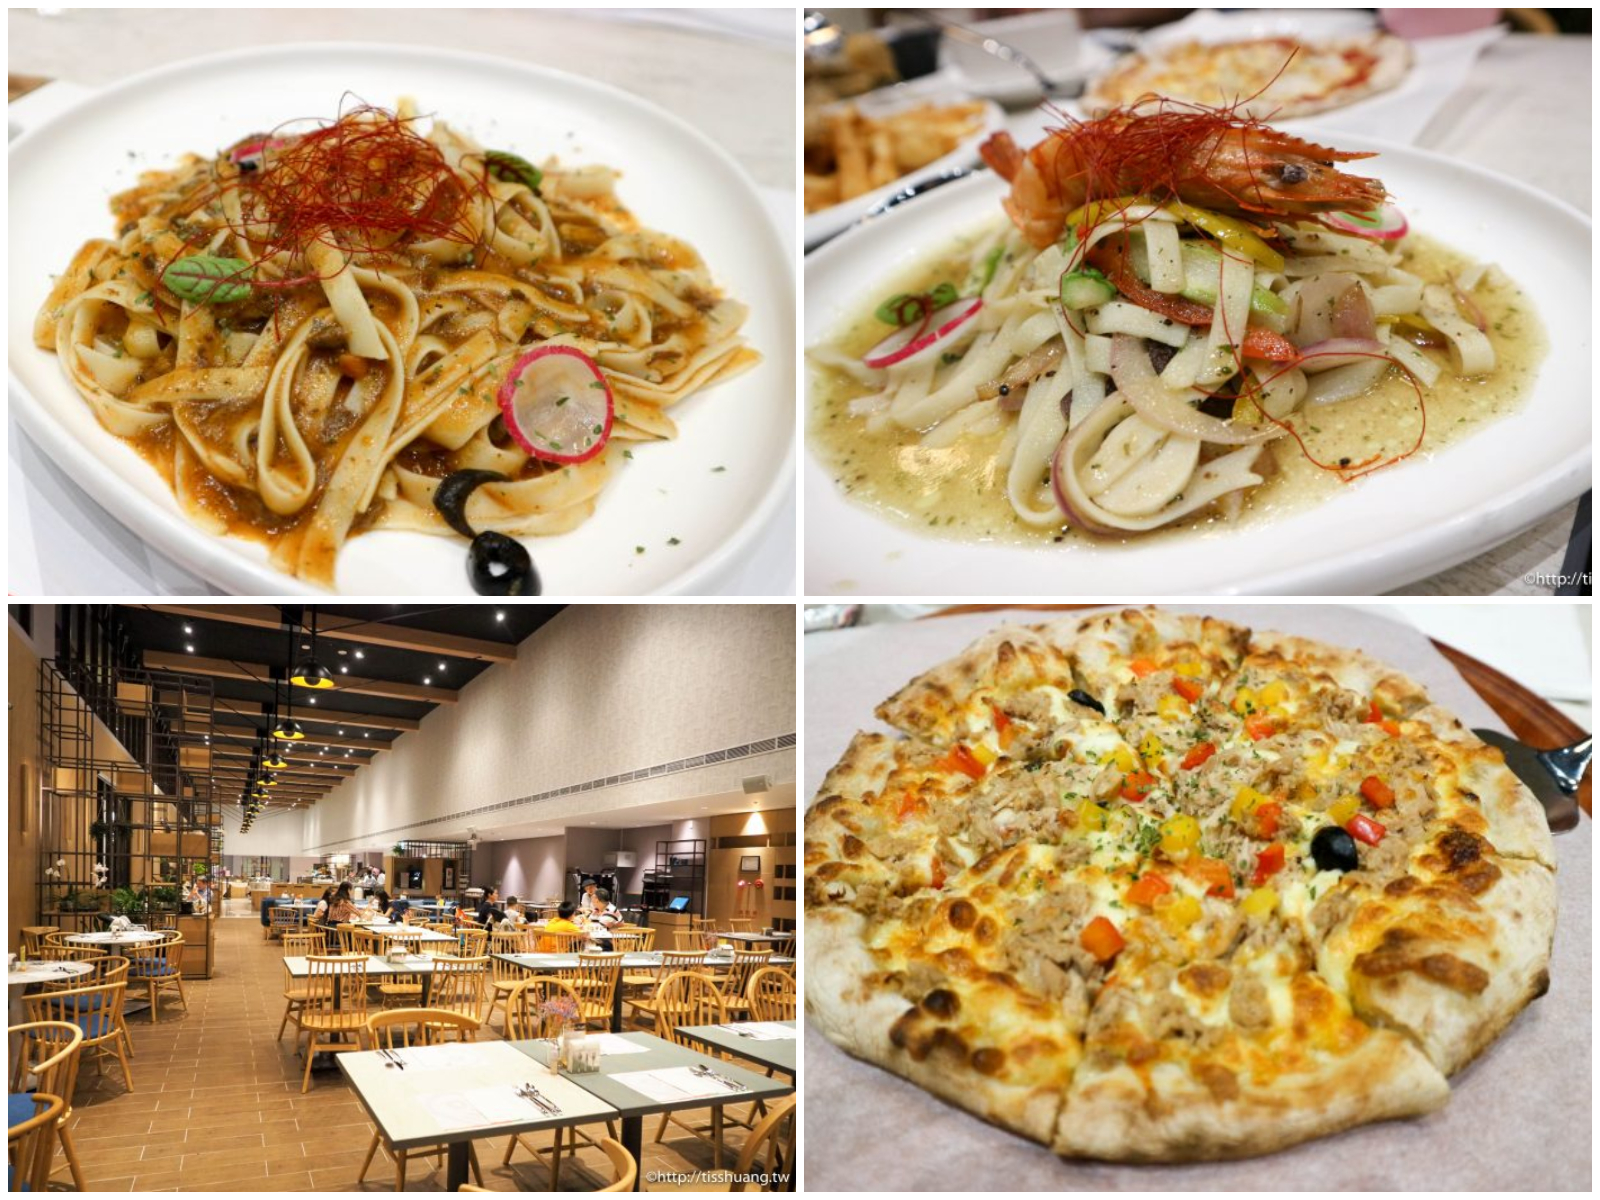 礁溪品文旅 的義式餐館餐點也做的俗，義大利麵和pizza都很到味，值得推薦